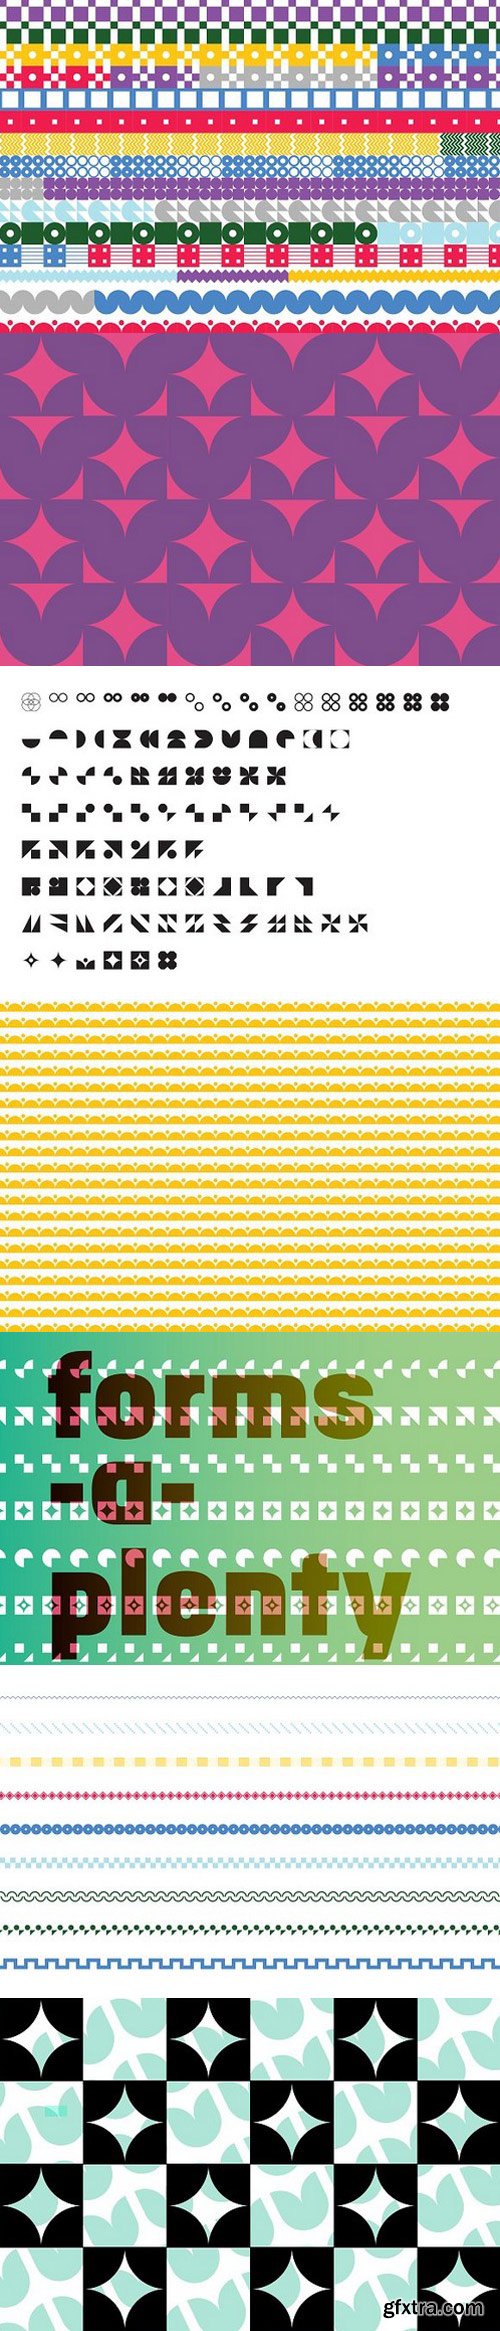 CM - FormPattern Full Set 1606304